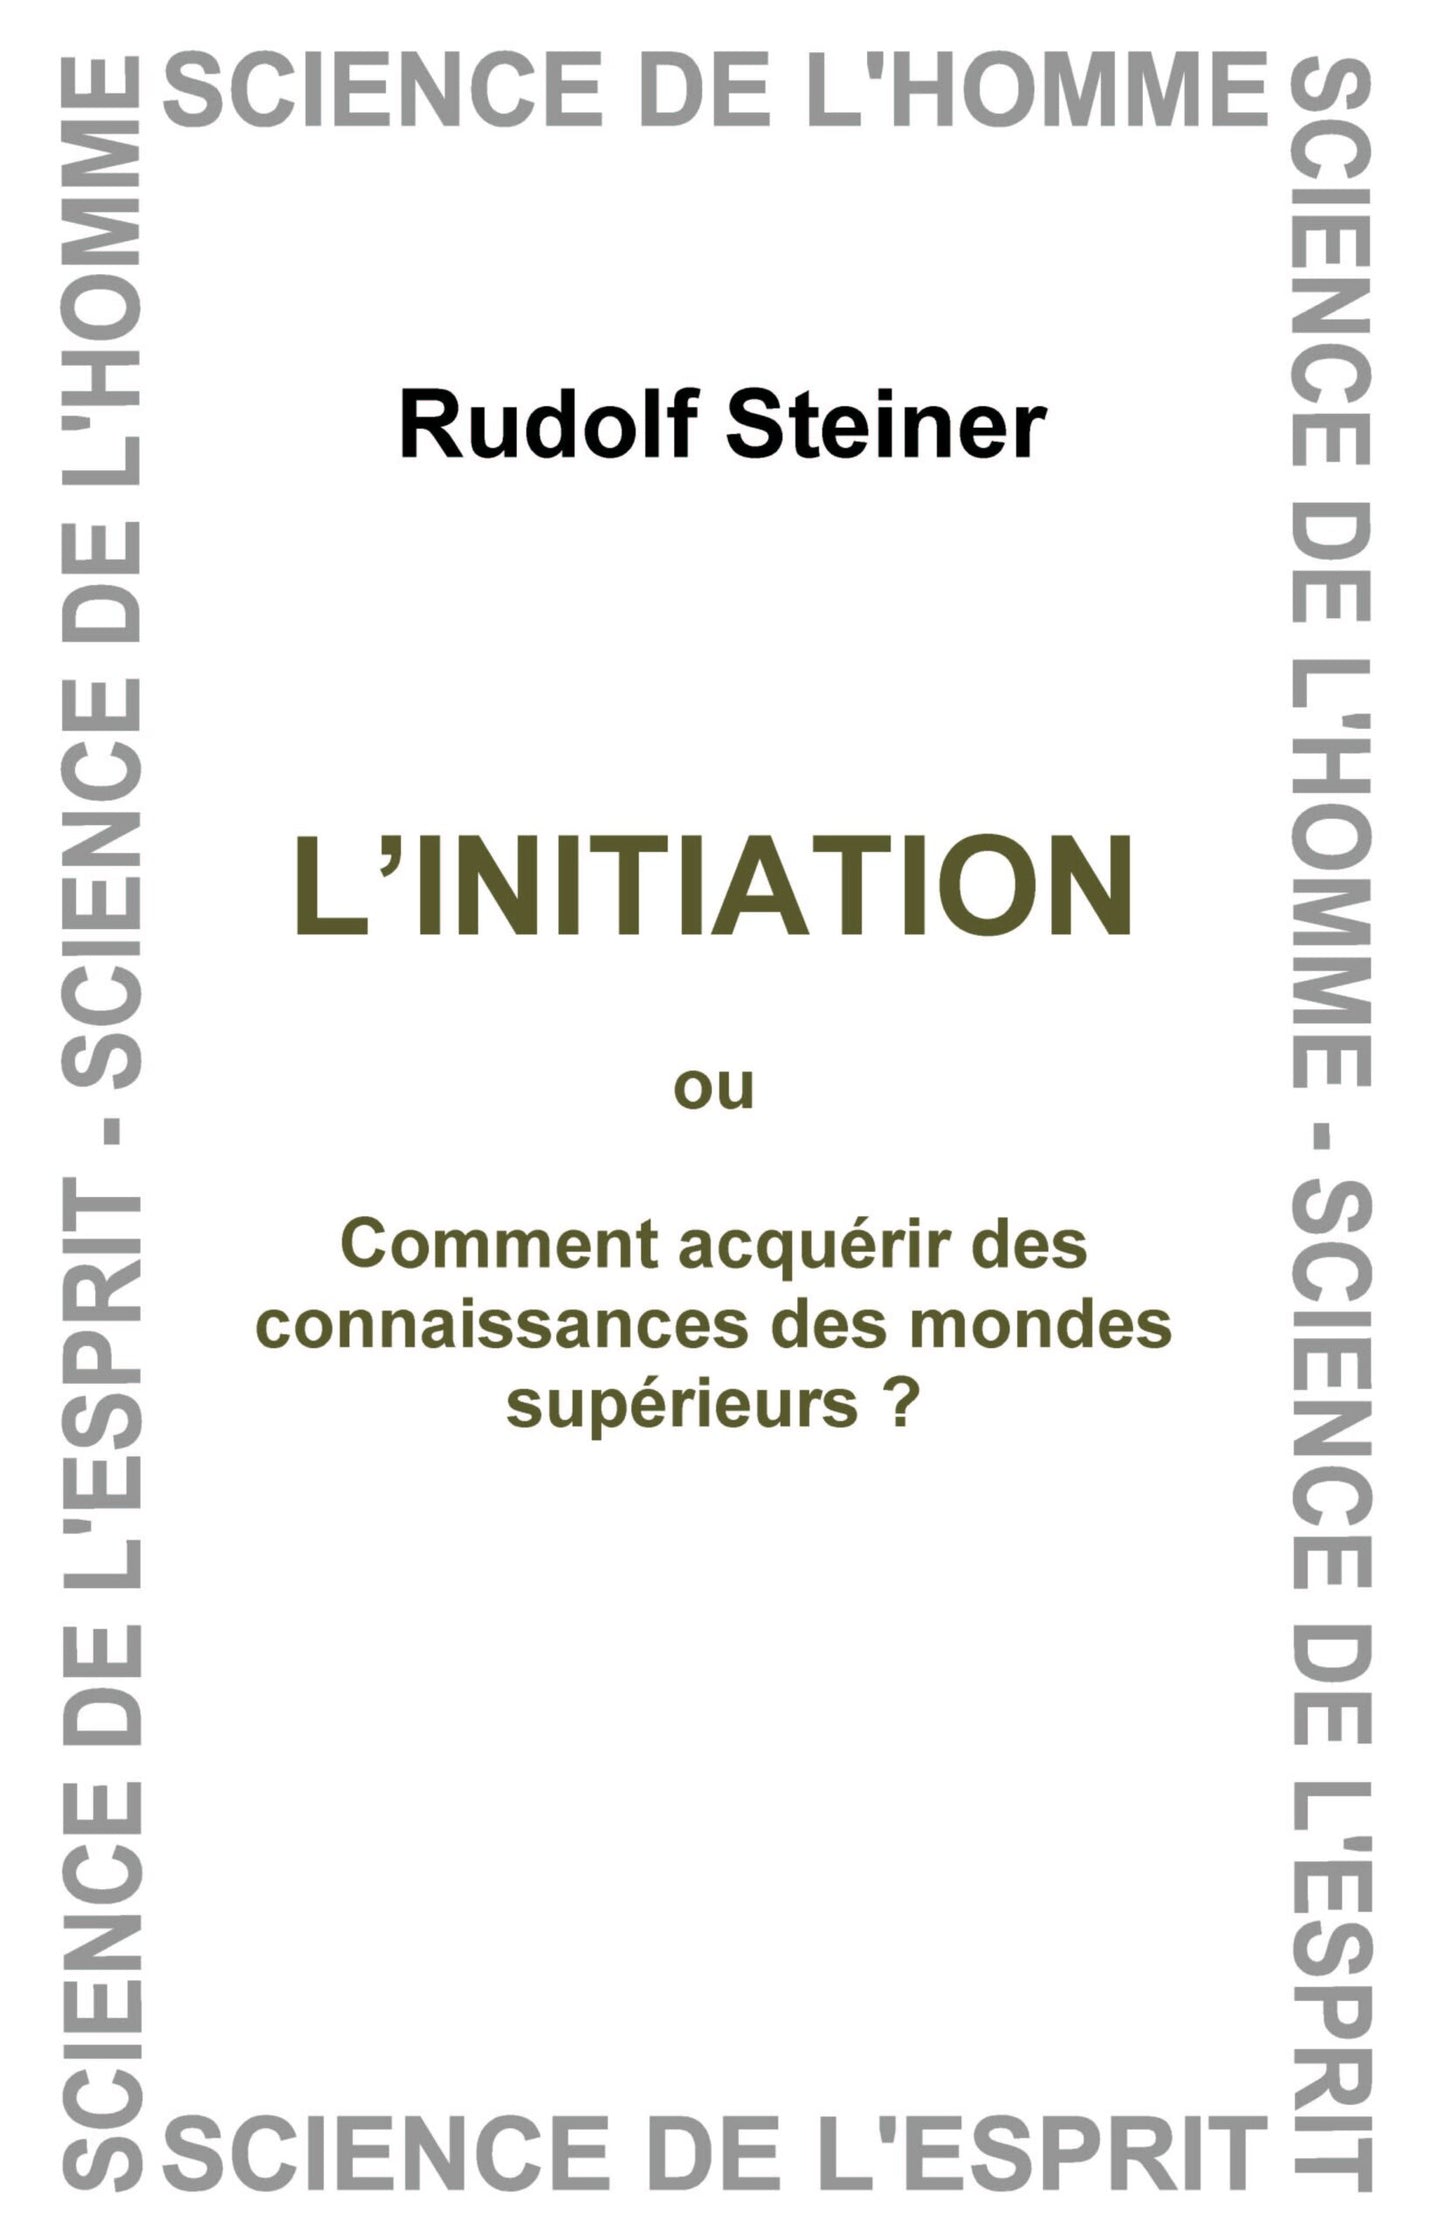 Initiation ed. EAR  GA010 R Steiner